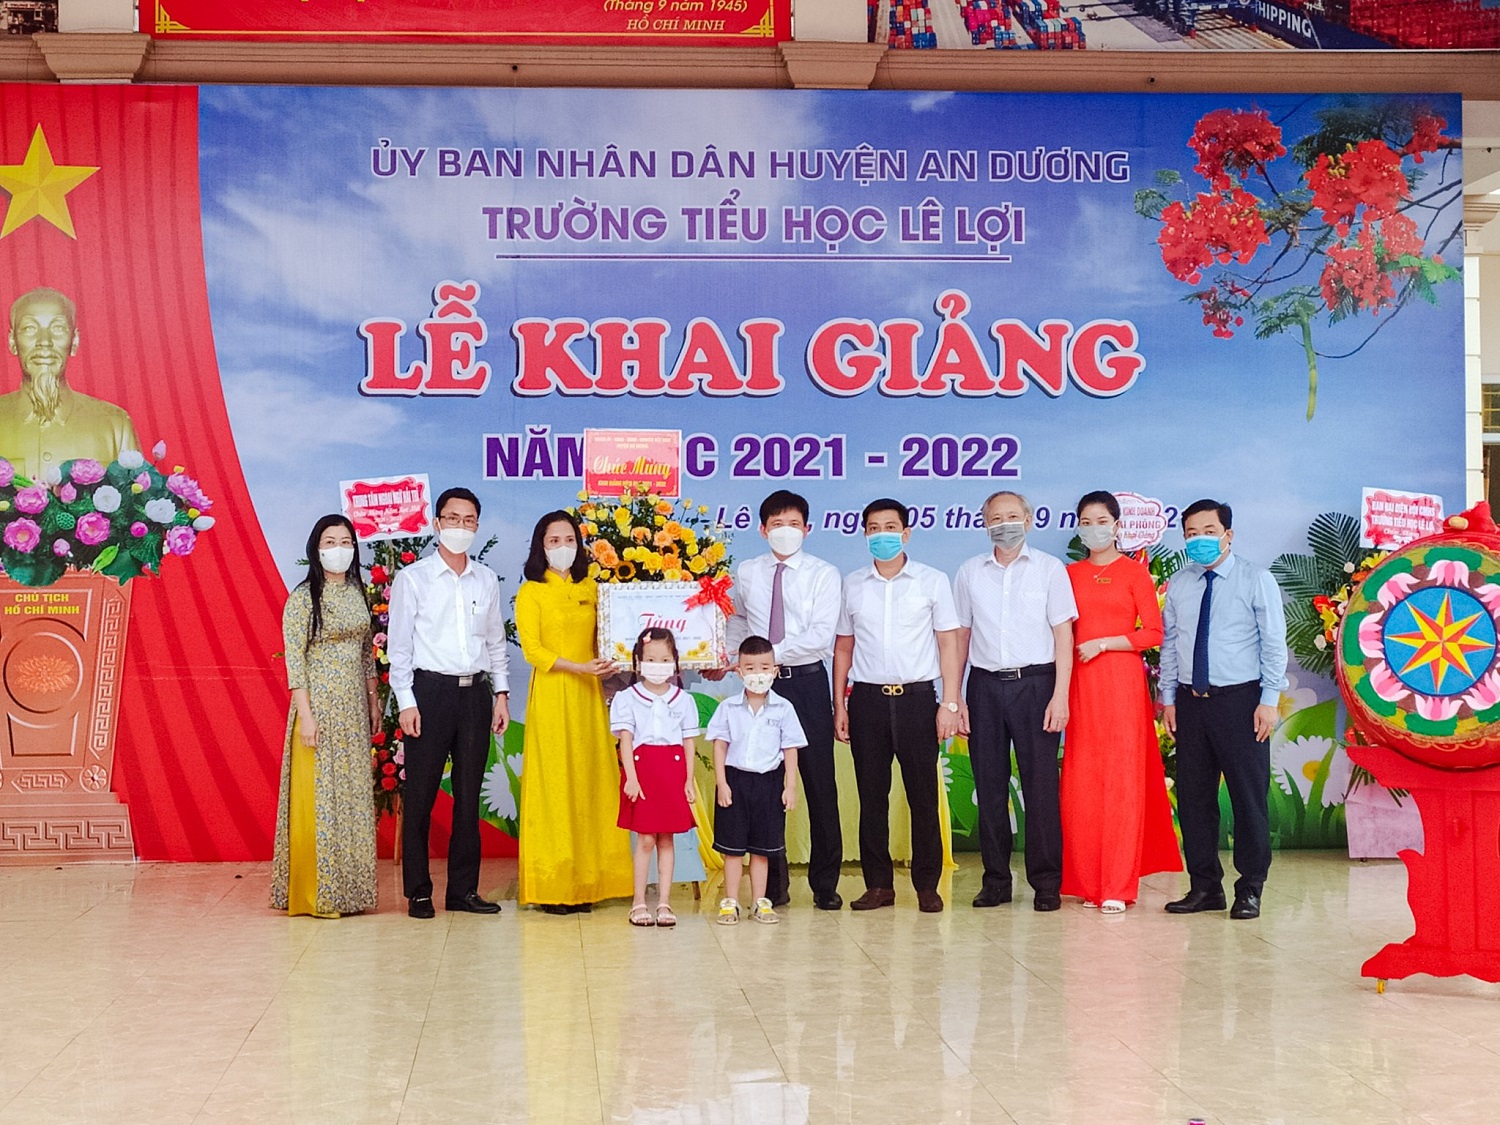 Đồng chí Phạm Việt Hùng- Chủ tịch UBND huyện An Dương tặng quà Trường tiểu học Lê Lợi- Trường đạt chuẩn Quốc gia nhân dịp năm học mới 2021- 2022